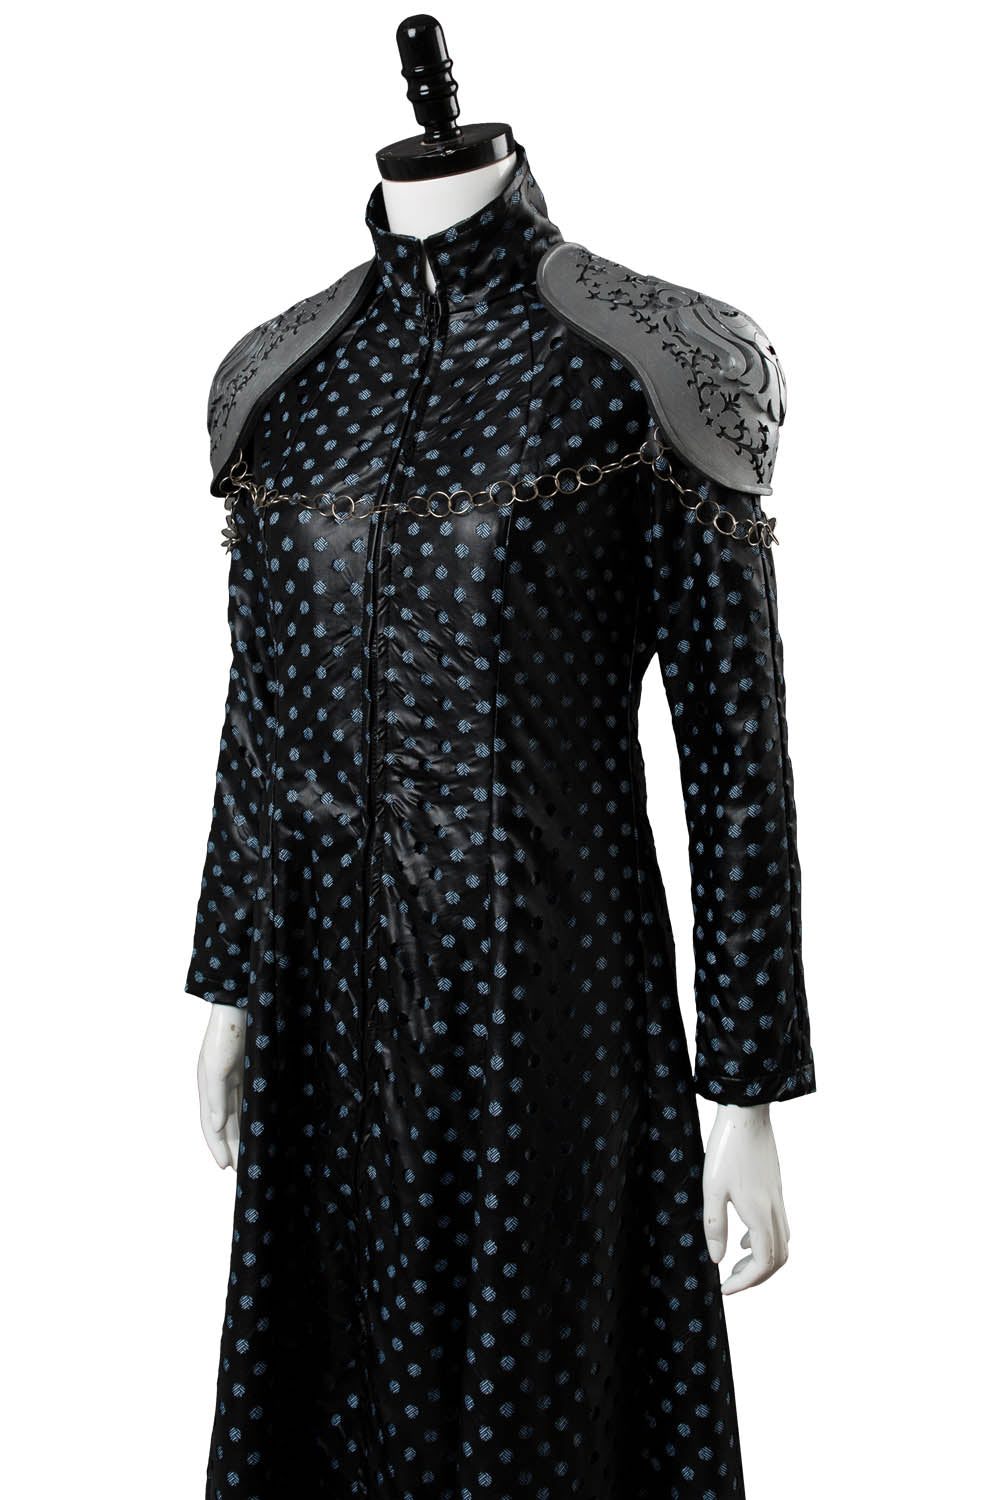 Game of Thrones GOT Cersei Lannister Cersei Llennister Kleid Cosplay Kostüm